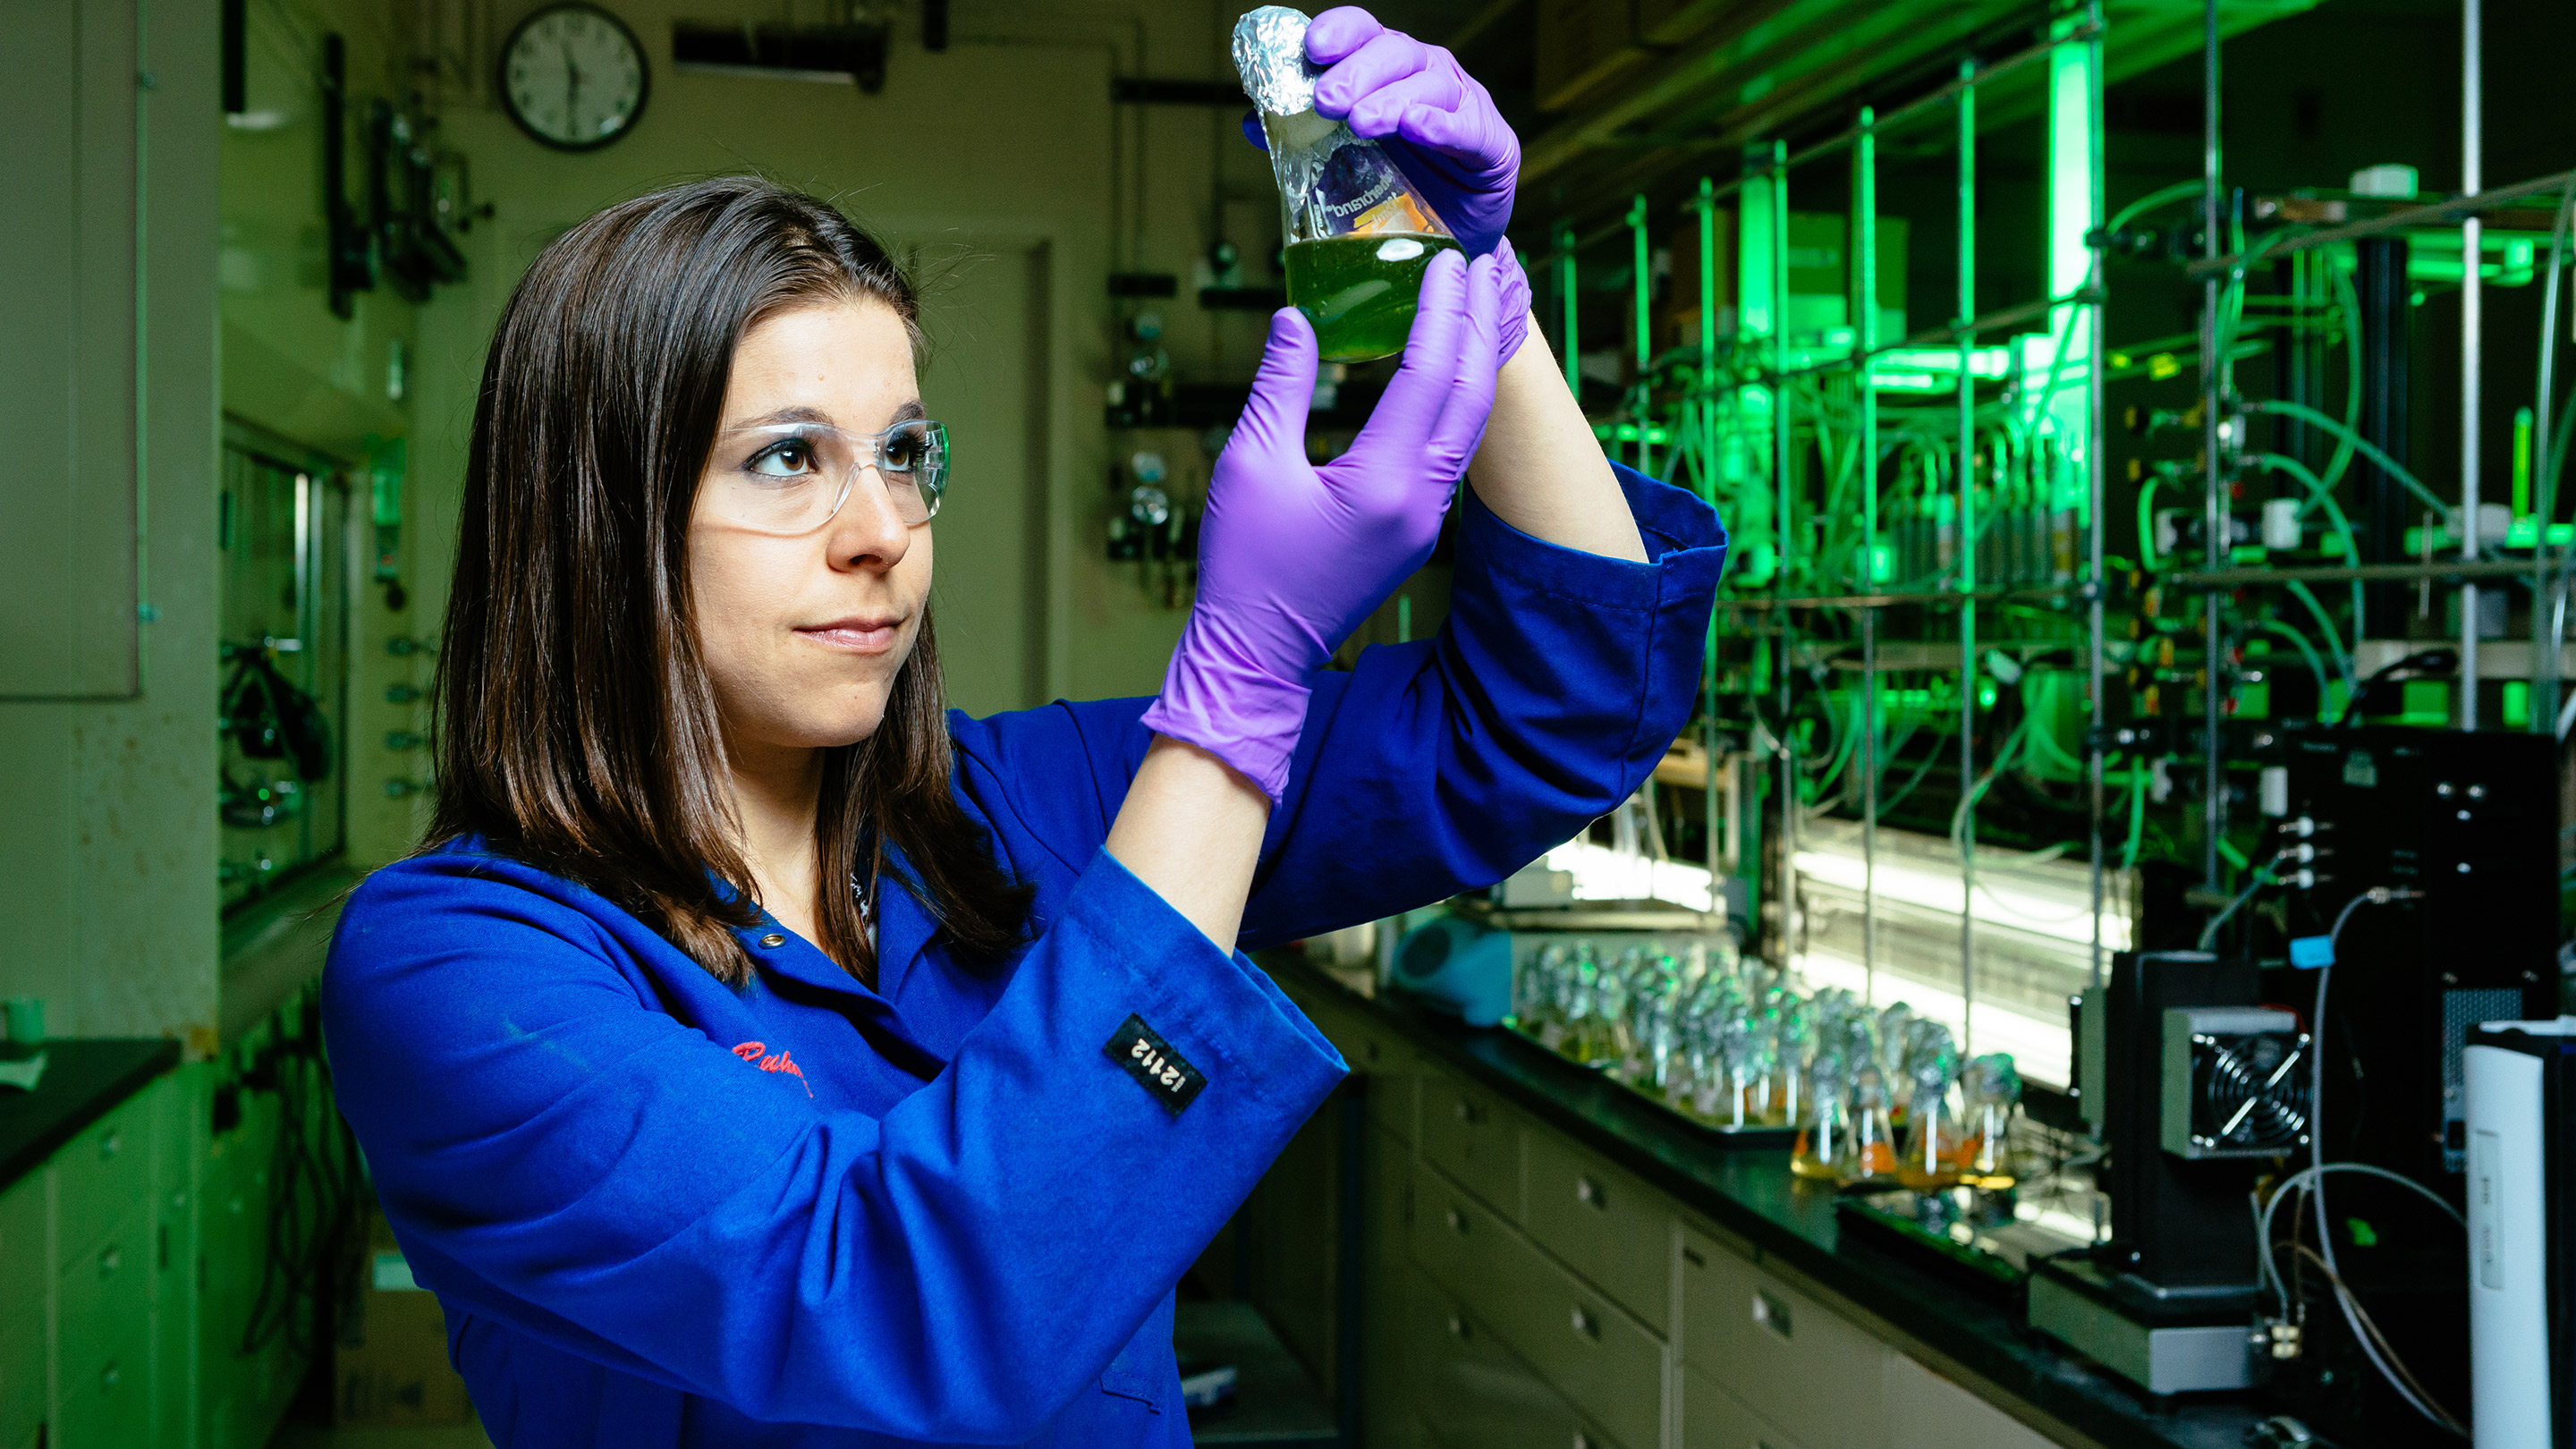 Image Photo  Algen-onderzoekstechnicus van ExxonMobil, Megan Ruhmel, werkt samen met Synthetic Genomics, Inc. (SGI) om de perfecte stam van vette, geschikte algen te ontwikkelen, die kan worden omgezet in voor motoren geschikte biobrandstof. Haar onderzoek kan nog tientallen jaren duren.